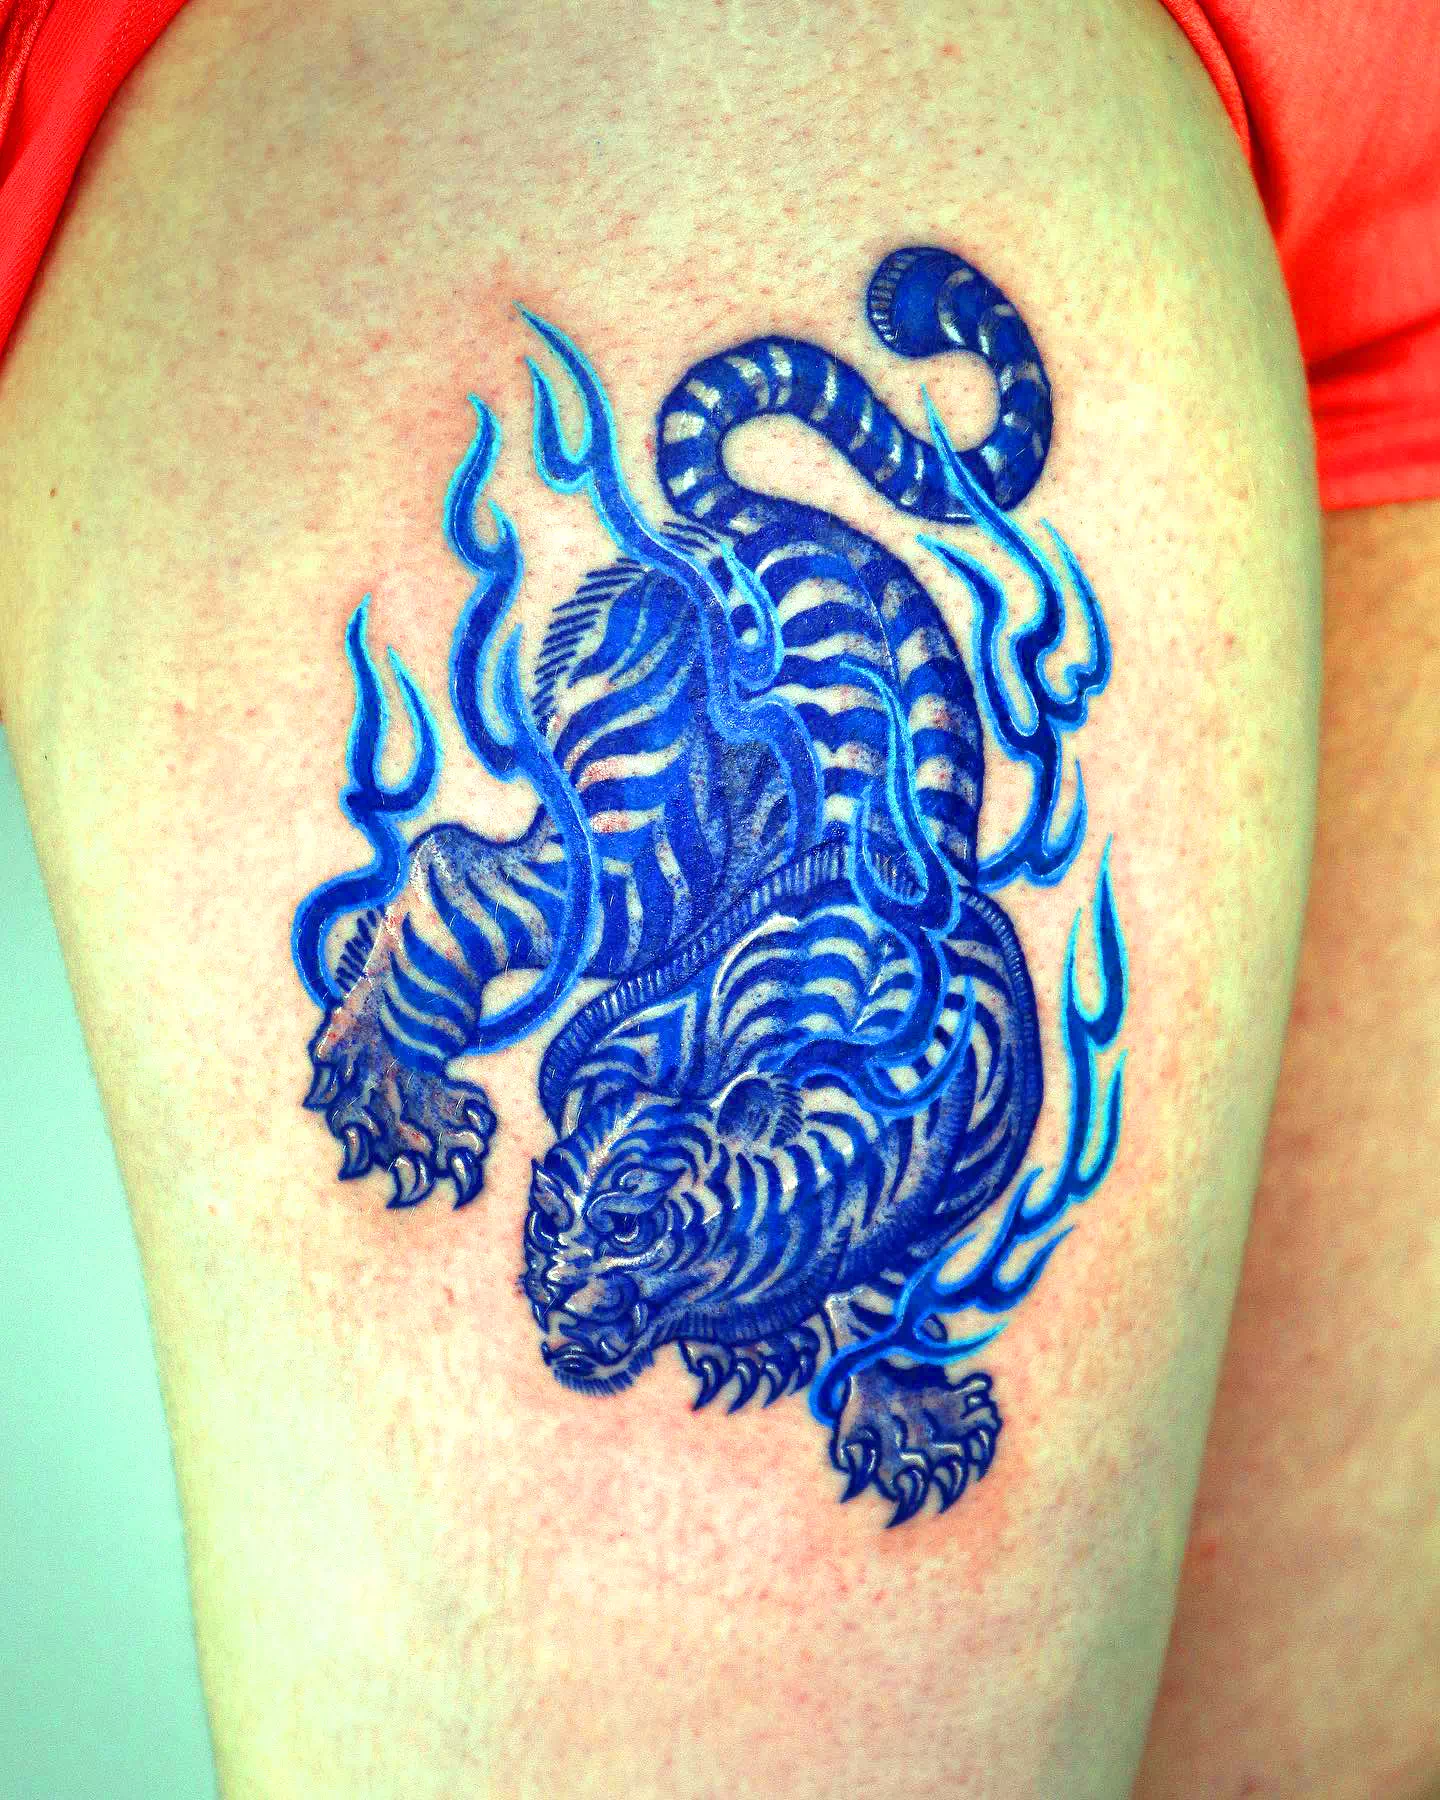 Tatuaje de un tigre azul en la pantorrilla